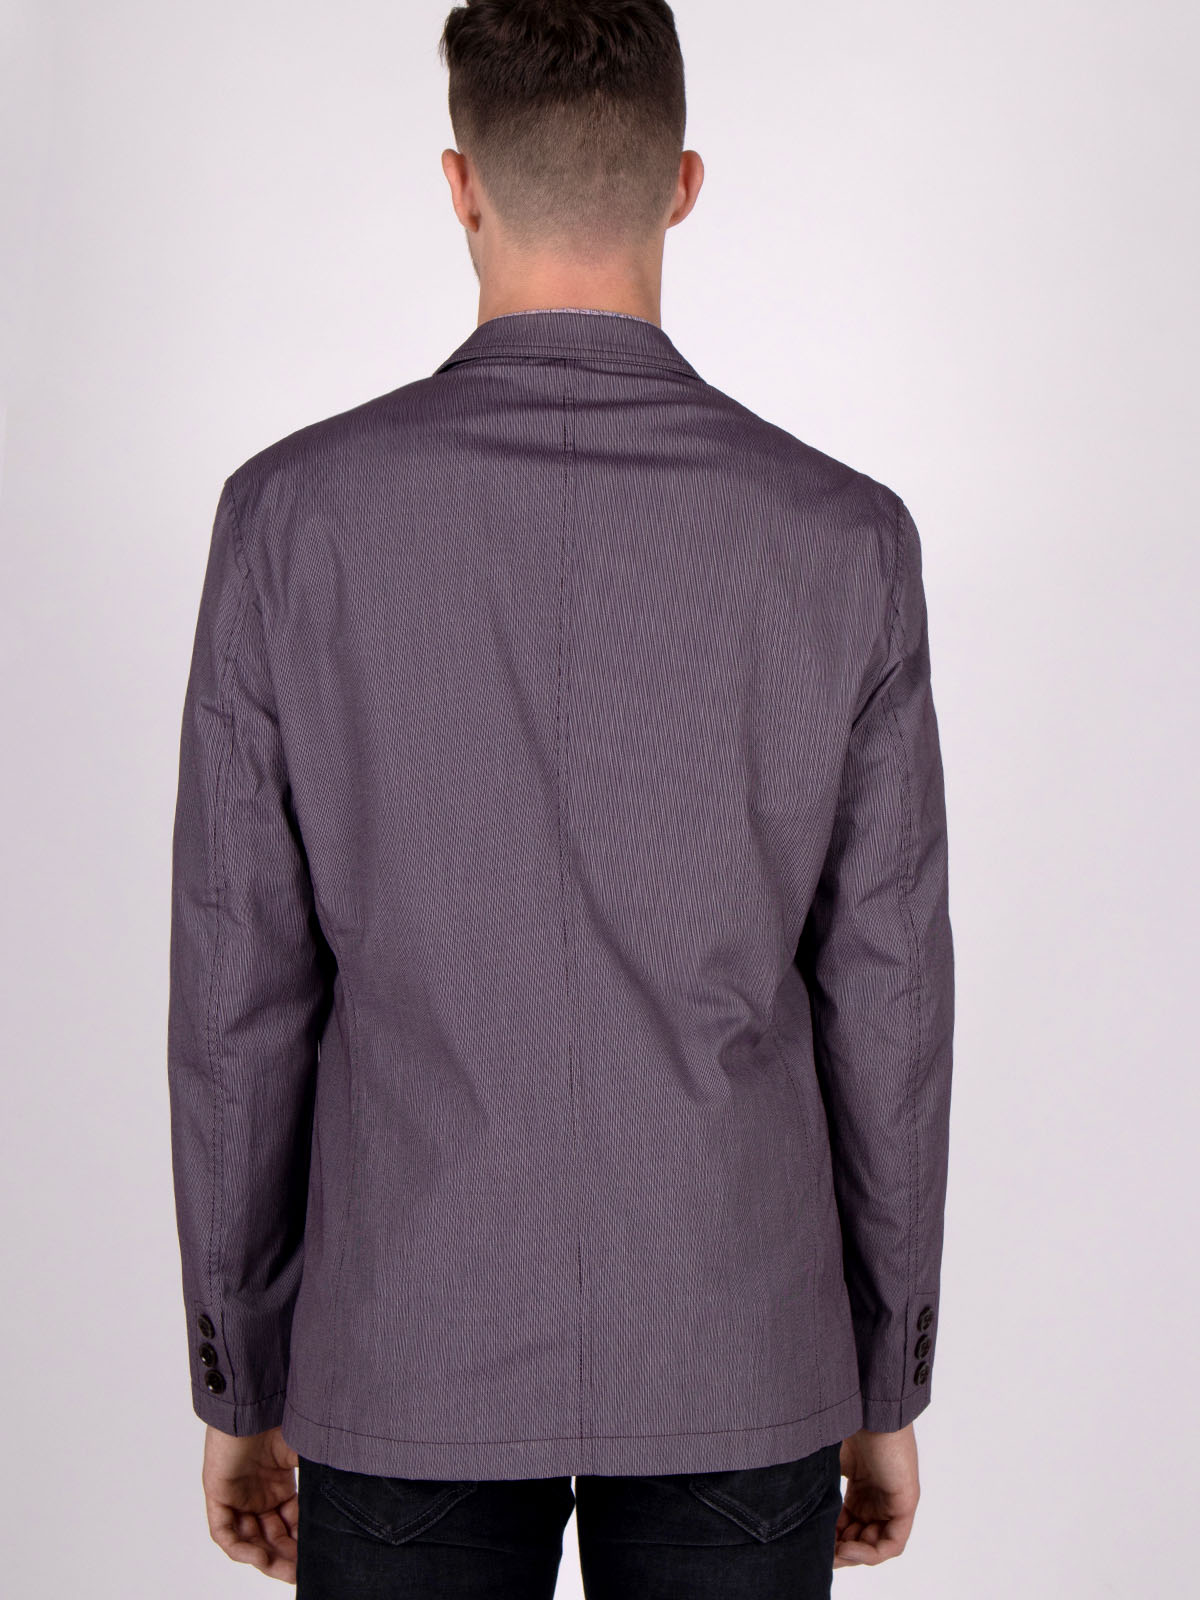 Jachetă mov cu dungă fină - 61005 € 23.62 img3